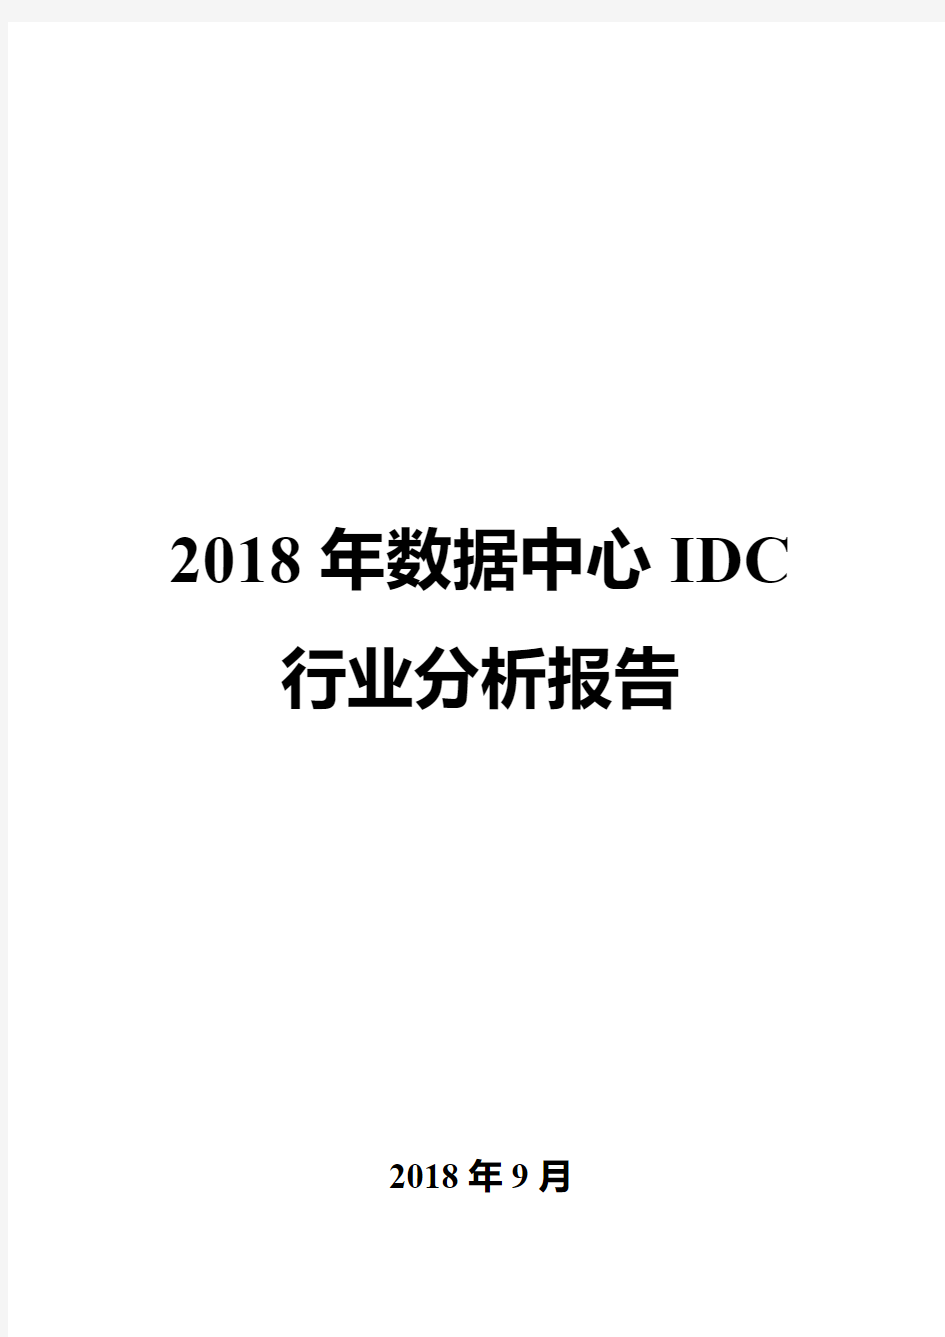 2018年数据中心IDC行业分析报告